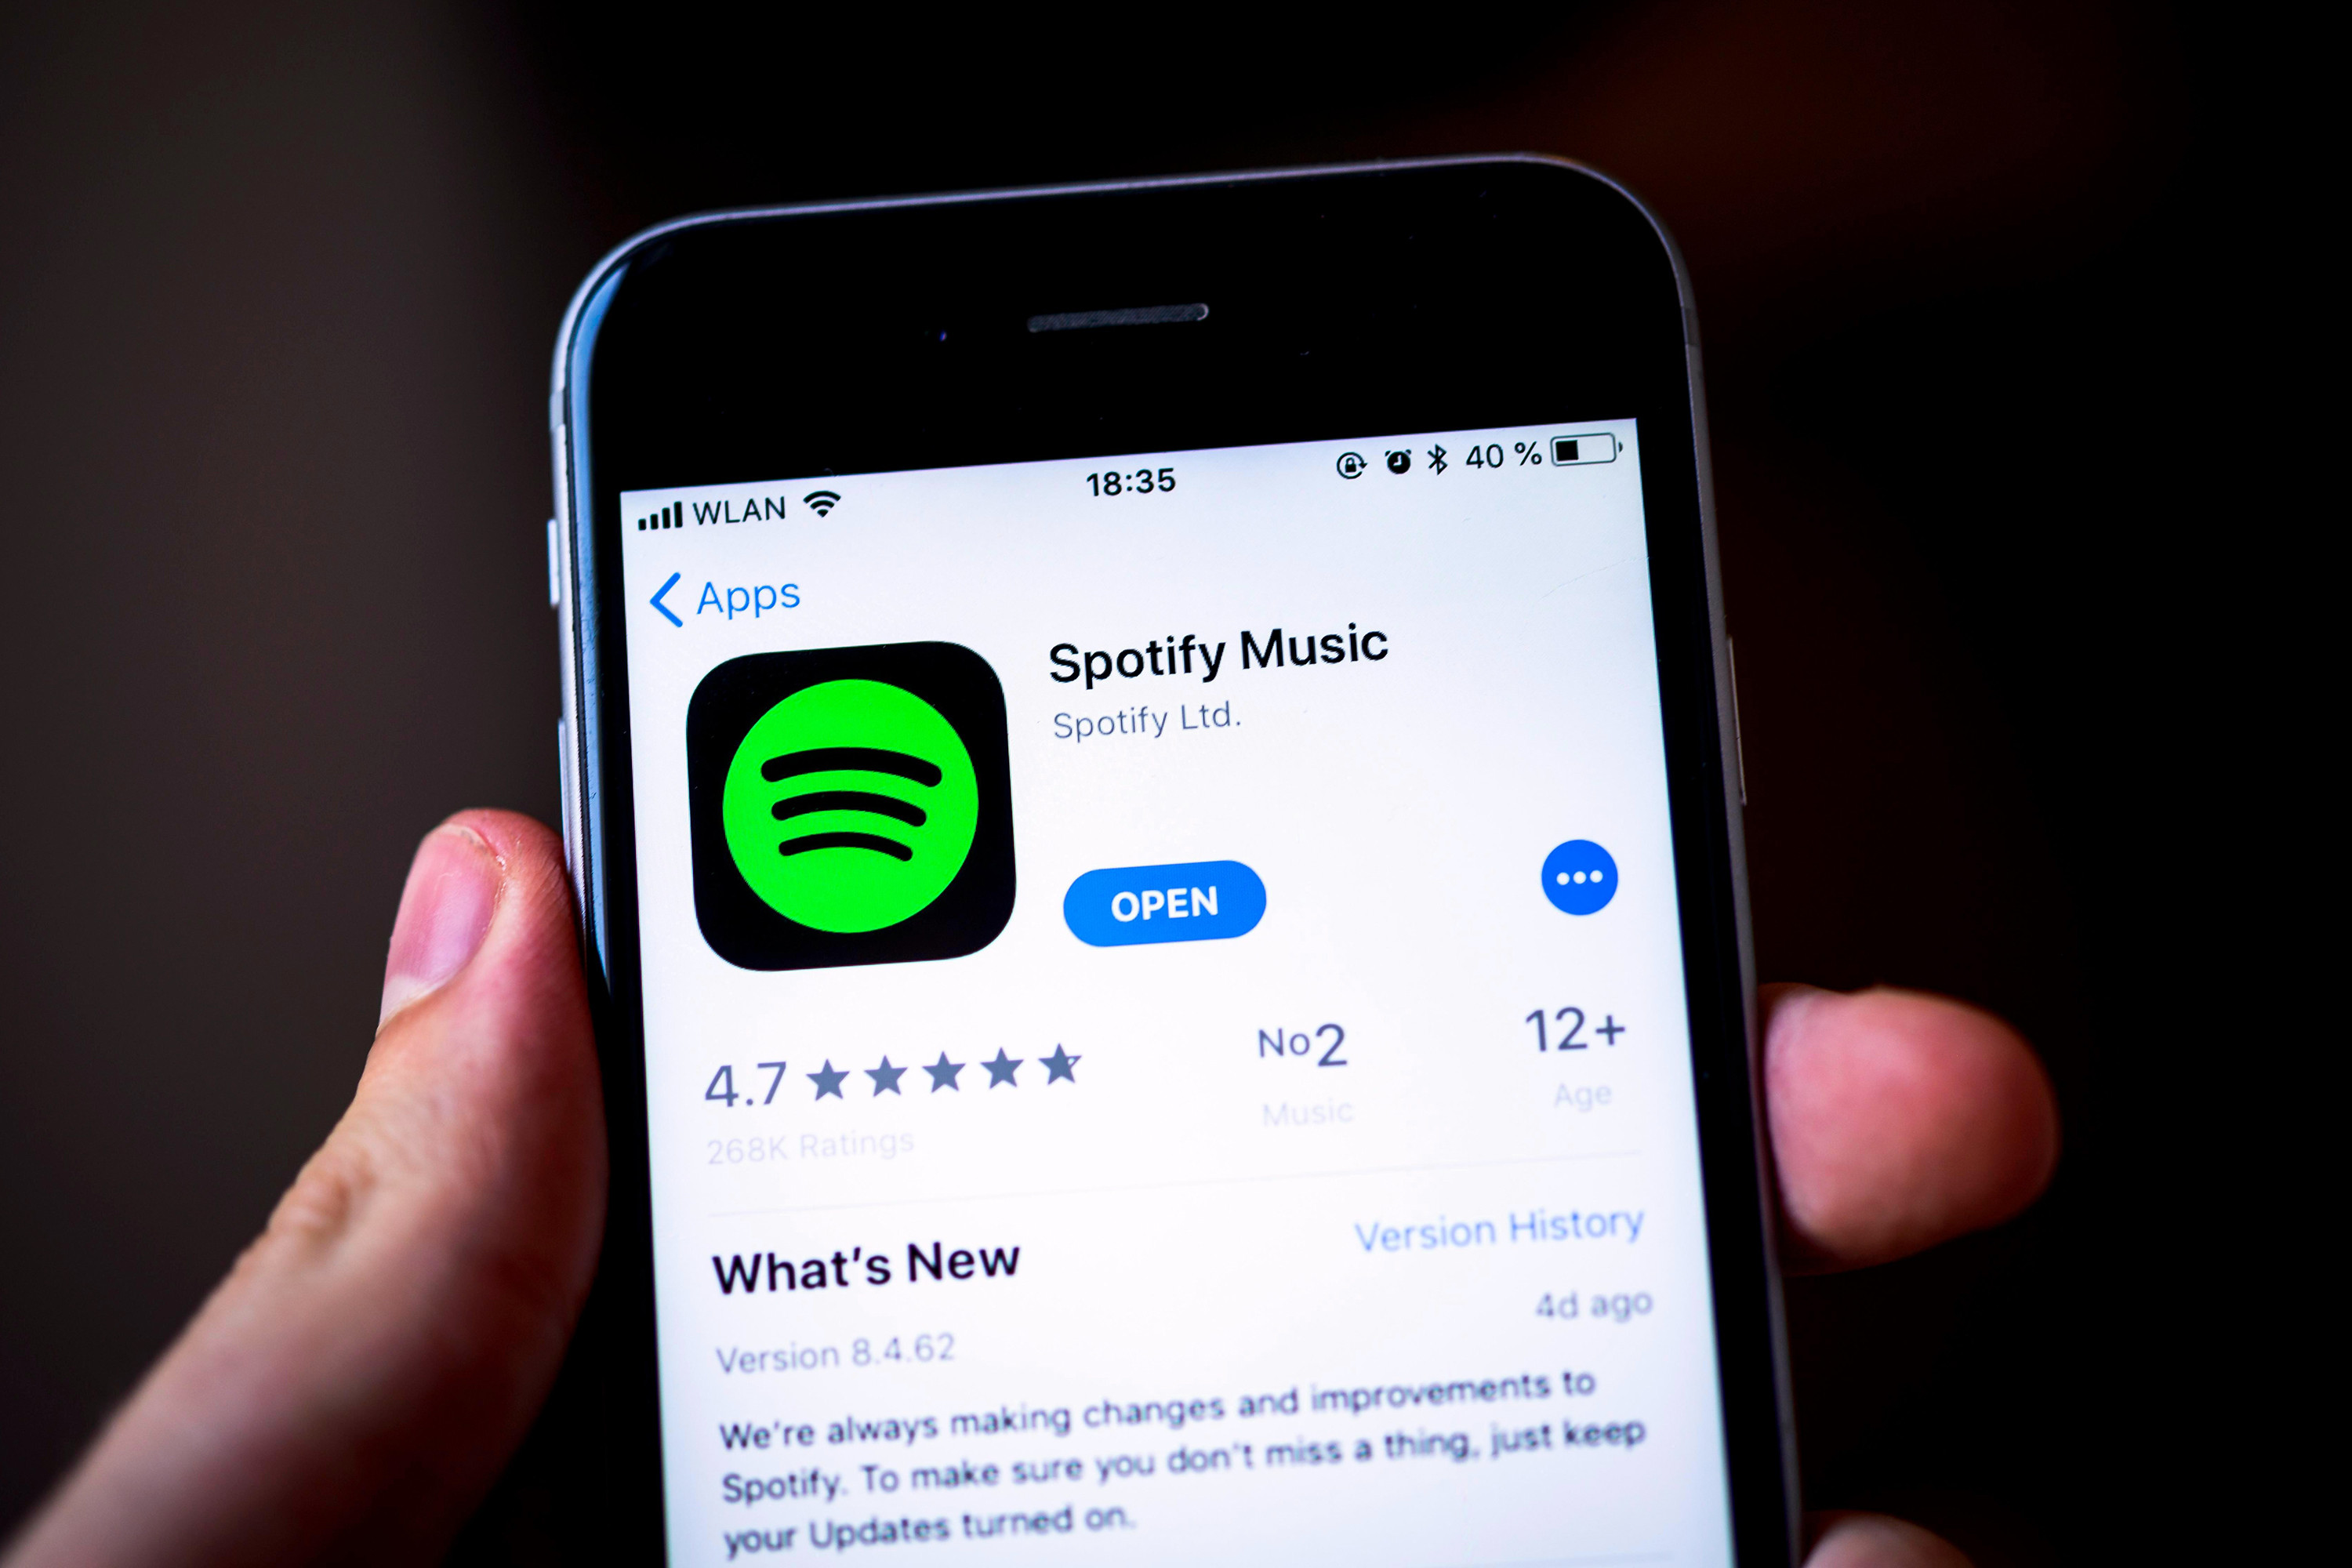 Spotify vs Apple lawsuit